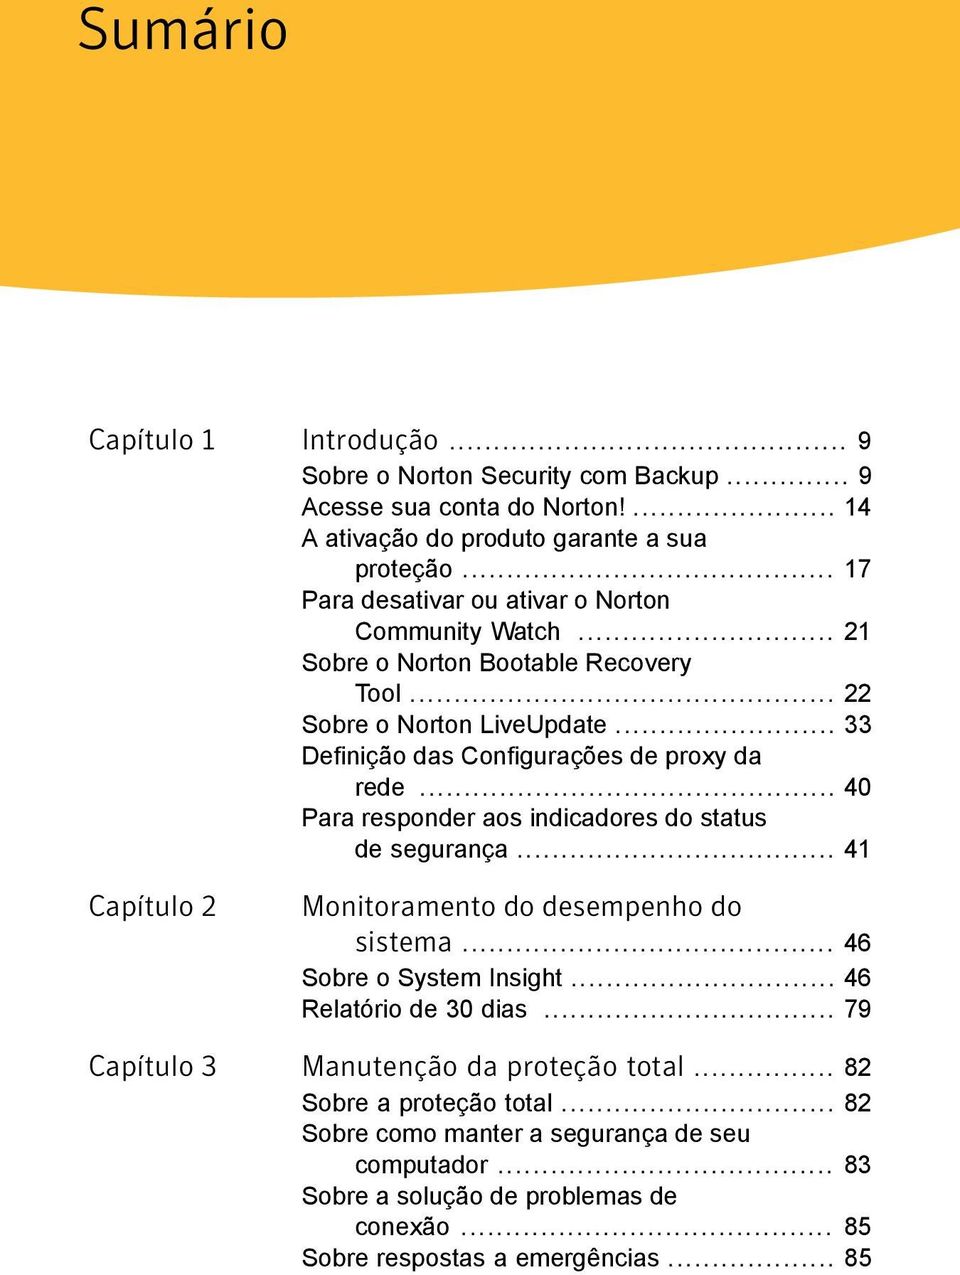 .. 40 Para responder aos indicadores do status de segurança... 41 Capítulo 2 Monitoramento do desempenho do sistema... 46 Sobre o System Insight... 46 Relatório de 30 dias.